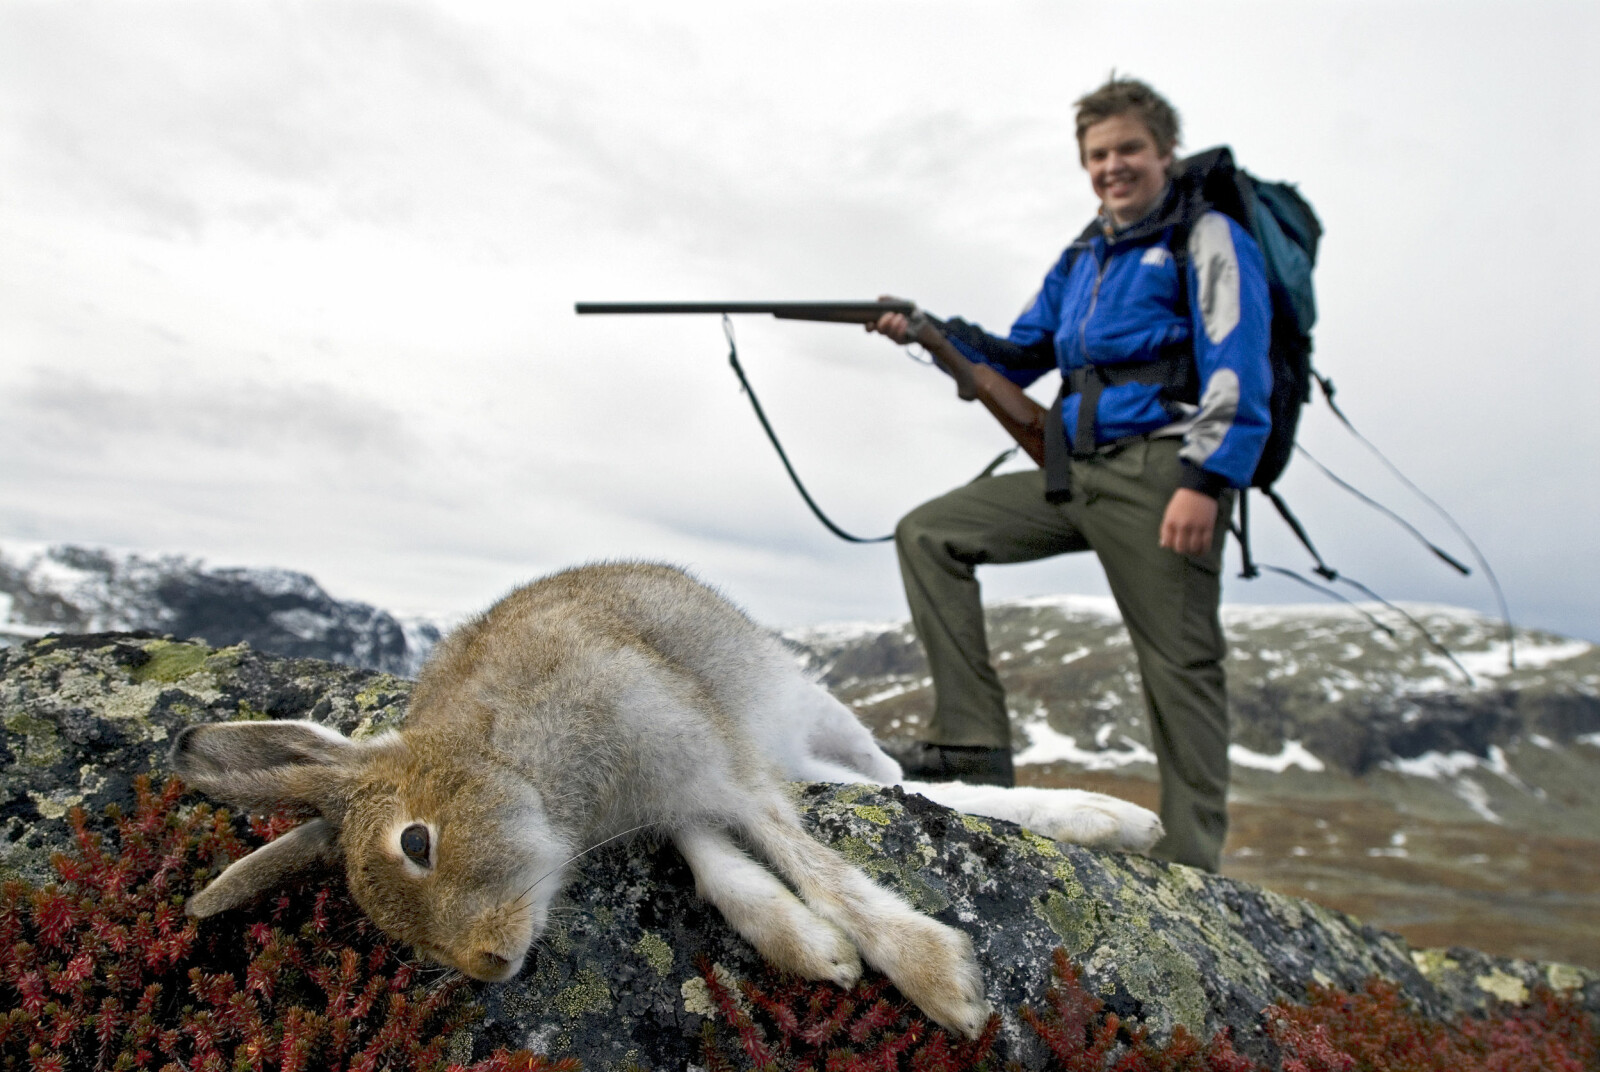 <b>AKTSOMHET:</b> Støkkjakt er den jakt­for­men som set­ter størst krav til akt­som­het hos je­ger­ne. (Foto: Tom Fu­ru­seth)